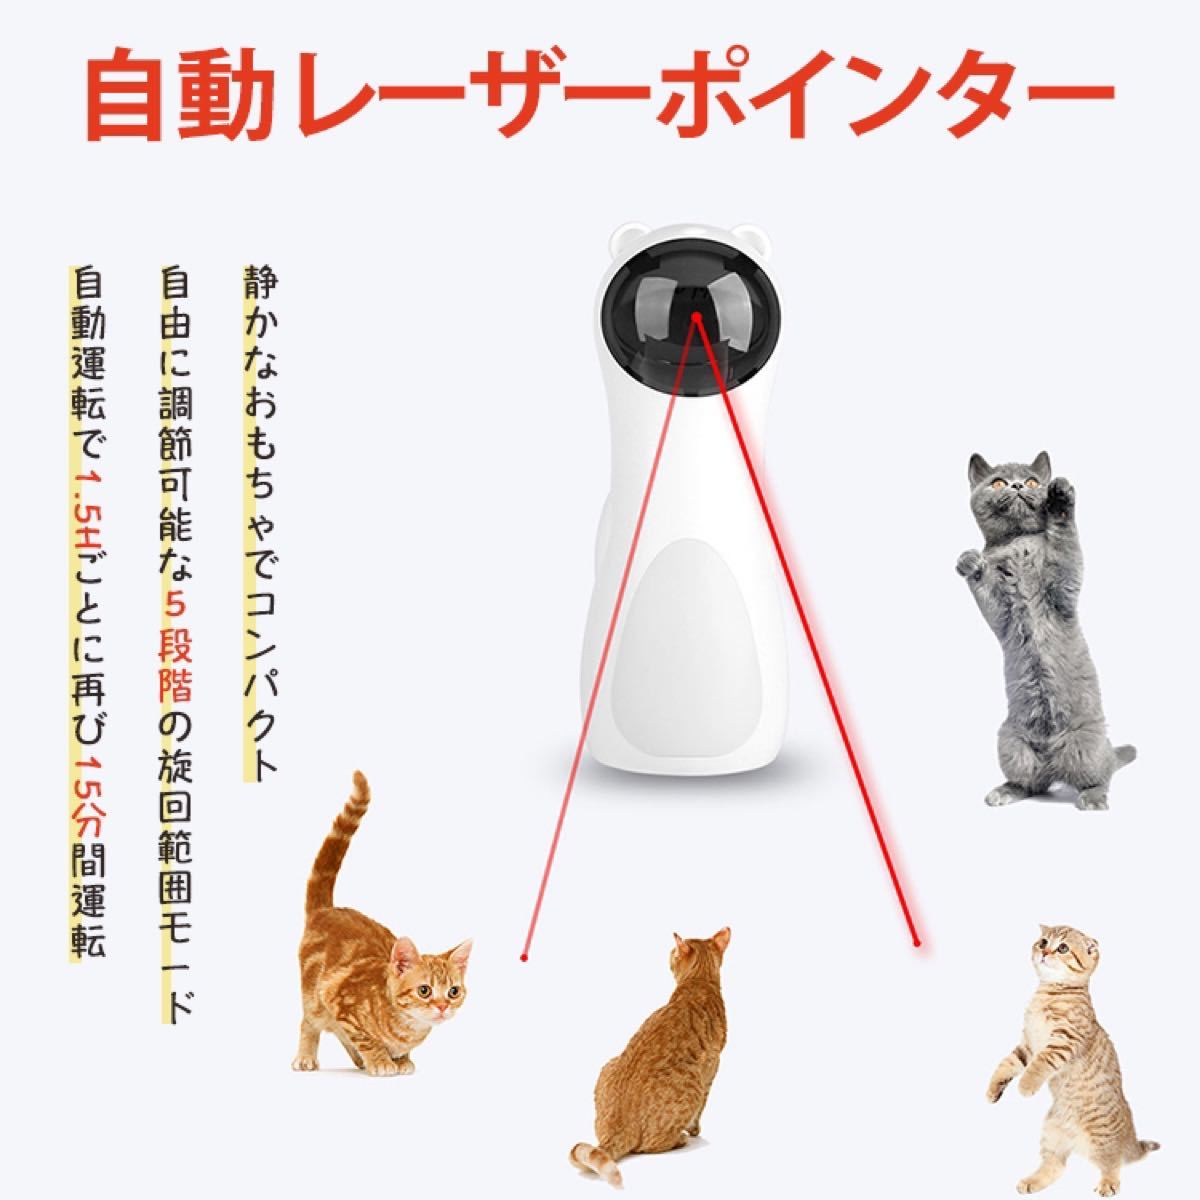 自動猫じゃらし 猫のおもちゃ 猫用品ペット玩具 自動レーザーおもちゃ USB